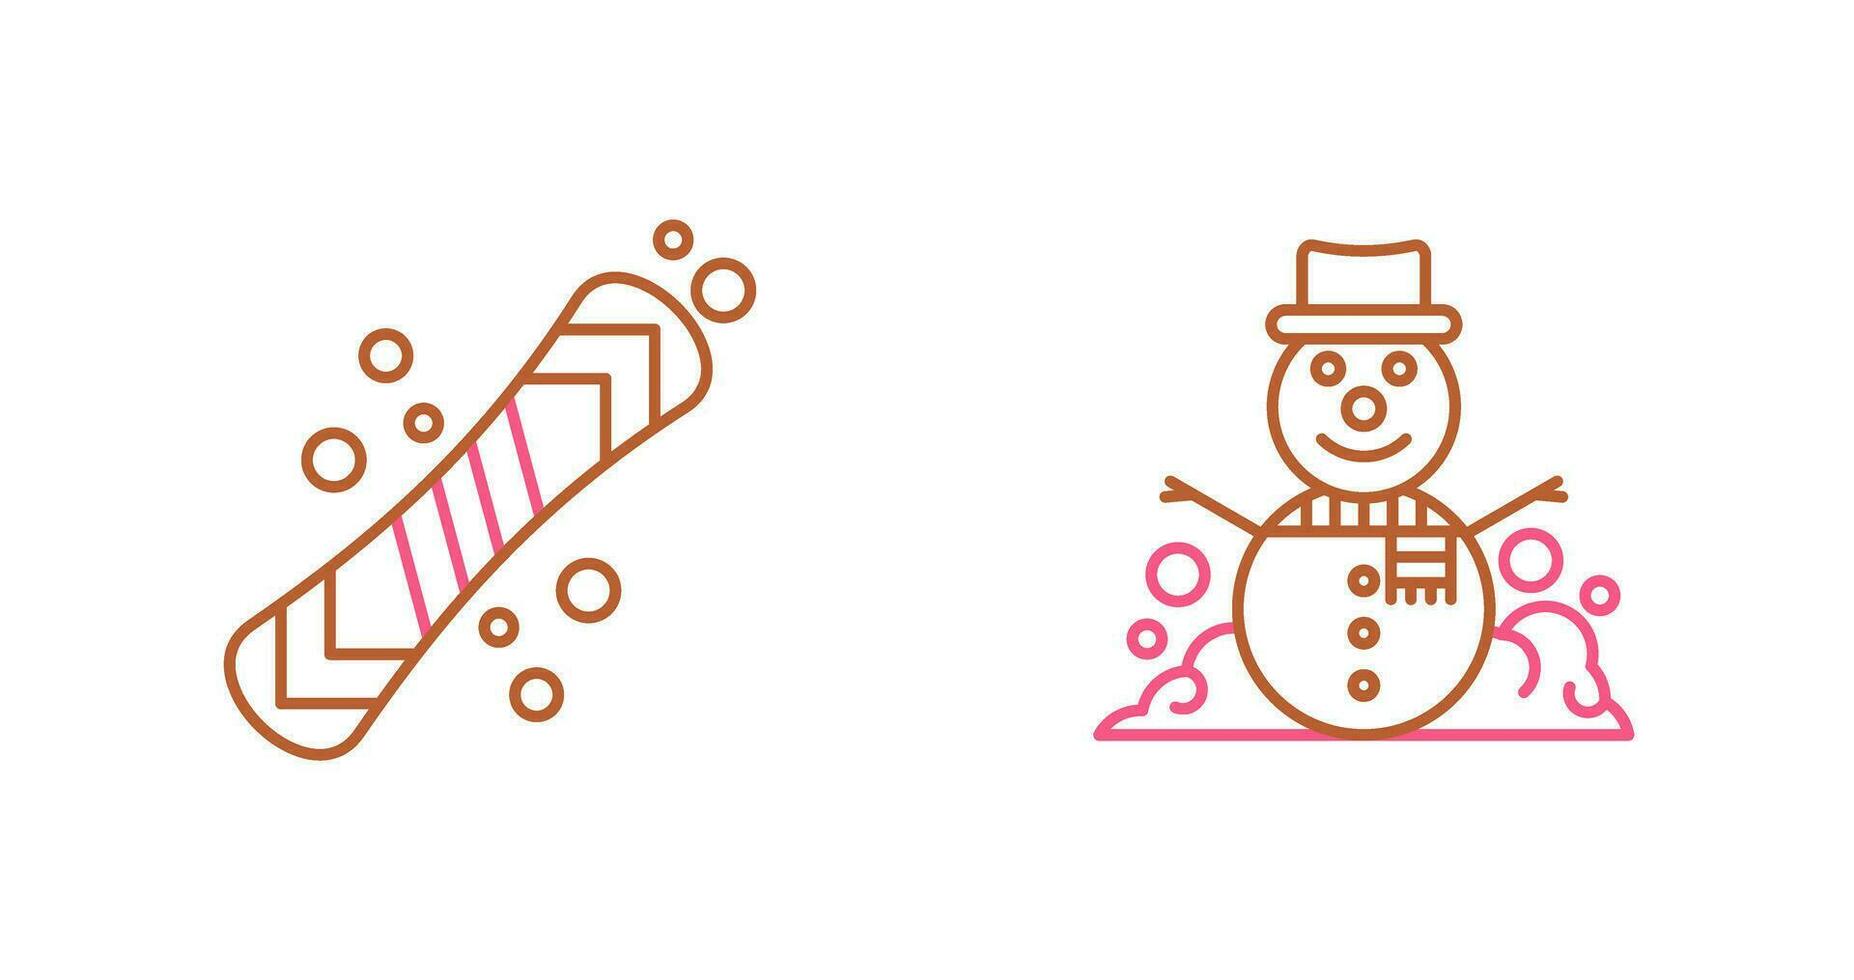 tabla de snowboard y monigote de nieve icono vector